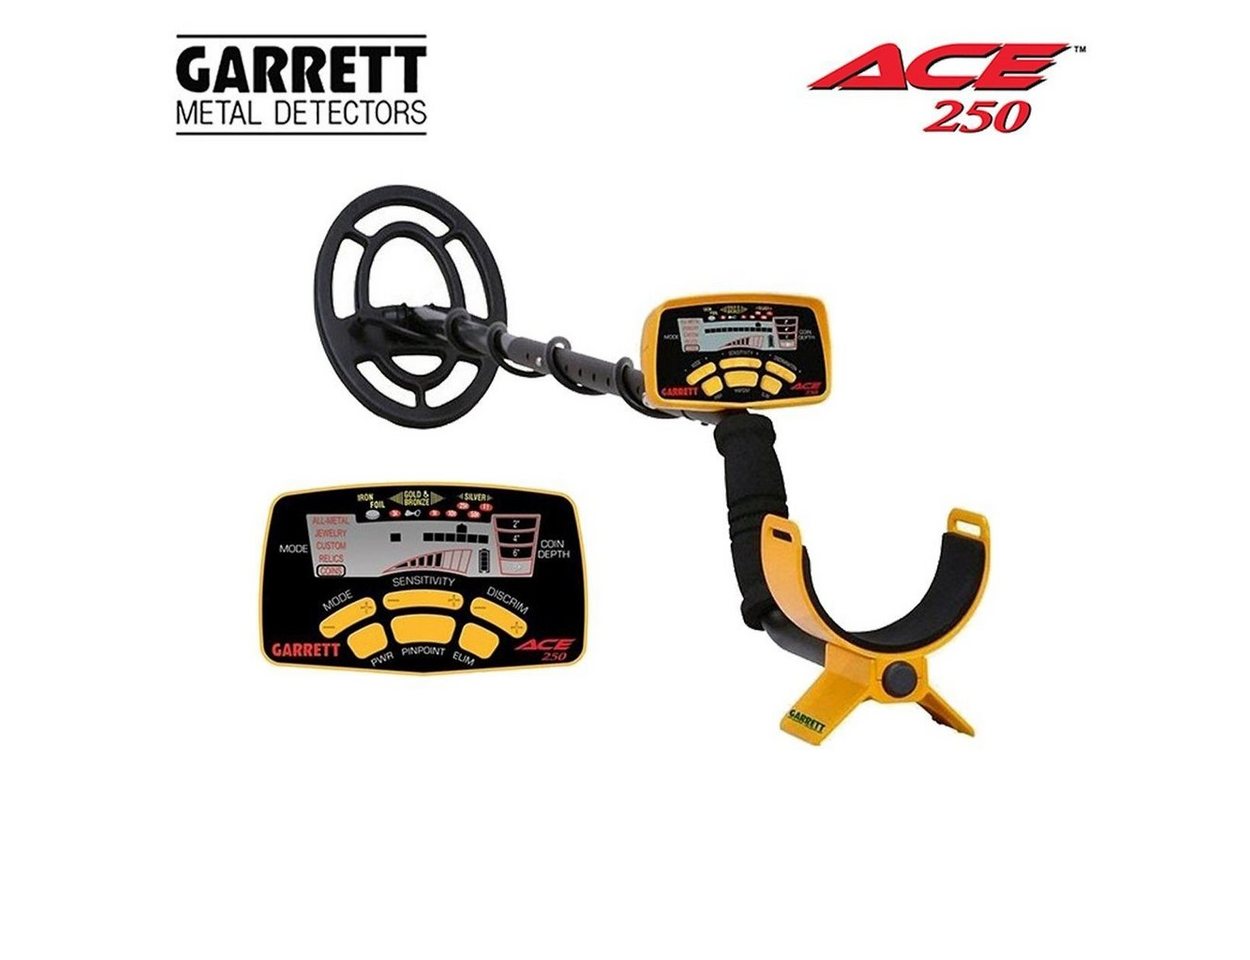 Garrett Metalldetektor Ace 250 von Garrett